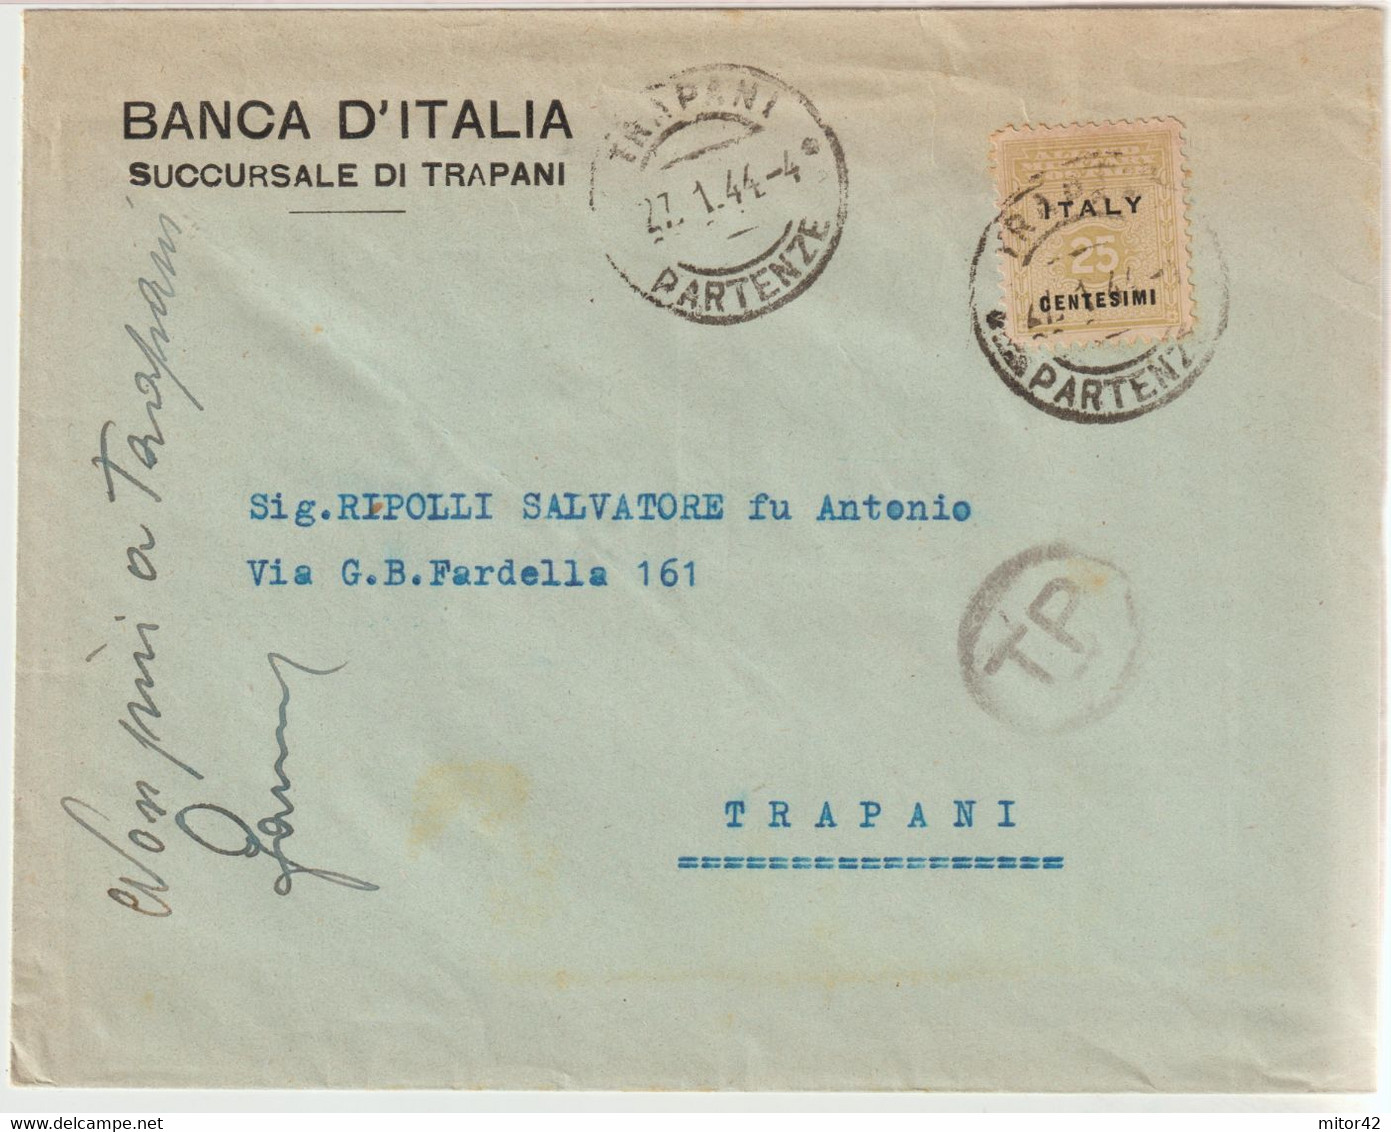 134-Amgot-Occupazione Alleata Sicilia-Busta Intestata-Banca D'Italia-Succursale Di Trapani-25c. Da E X Trapani - Anglo-american Occ.: Sicily